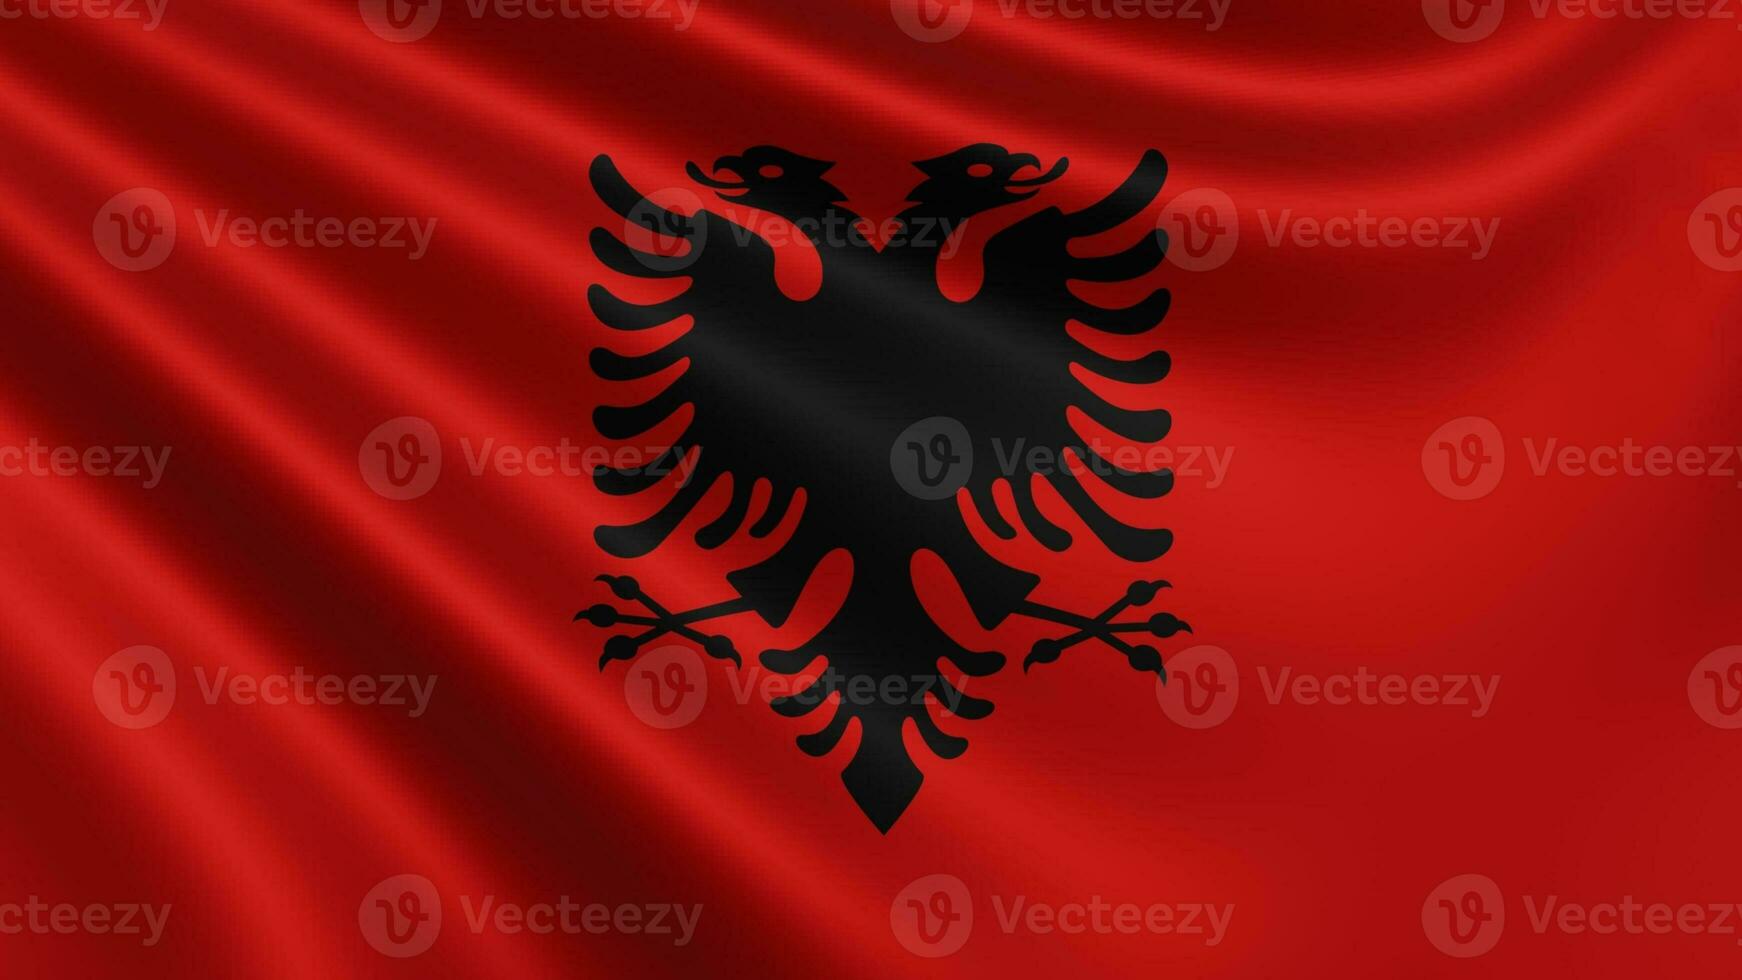 rendre de le albanais drapeau papillonne dans le vent fermer, le nationale drapeau de photo